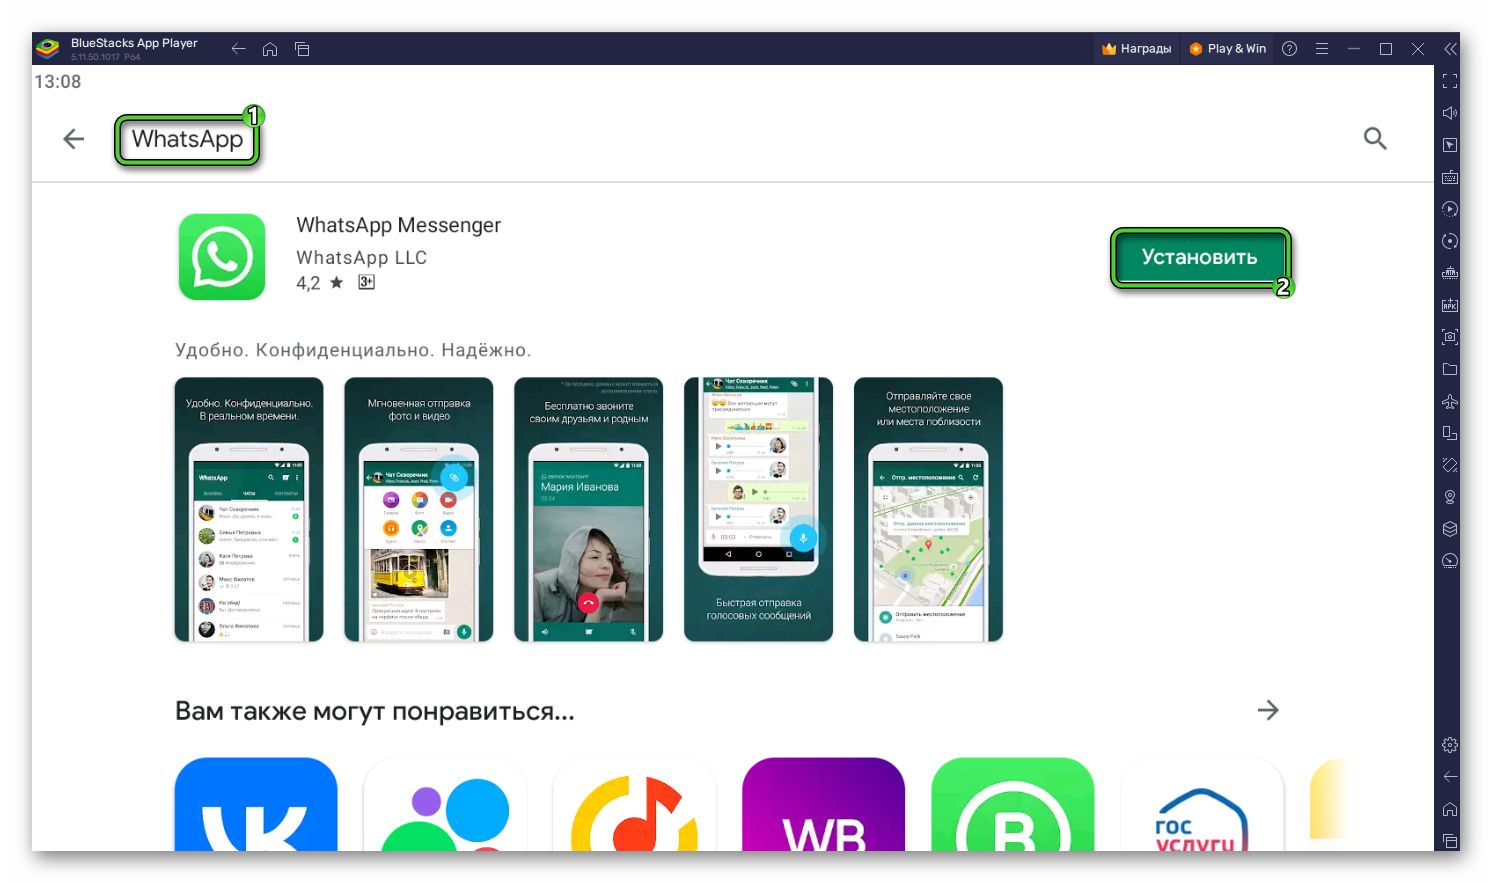 Установить мессенджер WhatsApp с помощью функции поиска в магазине Play Store в BlueStacks